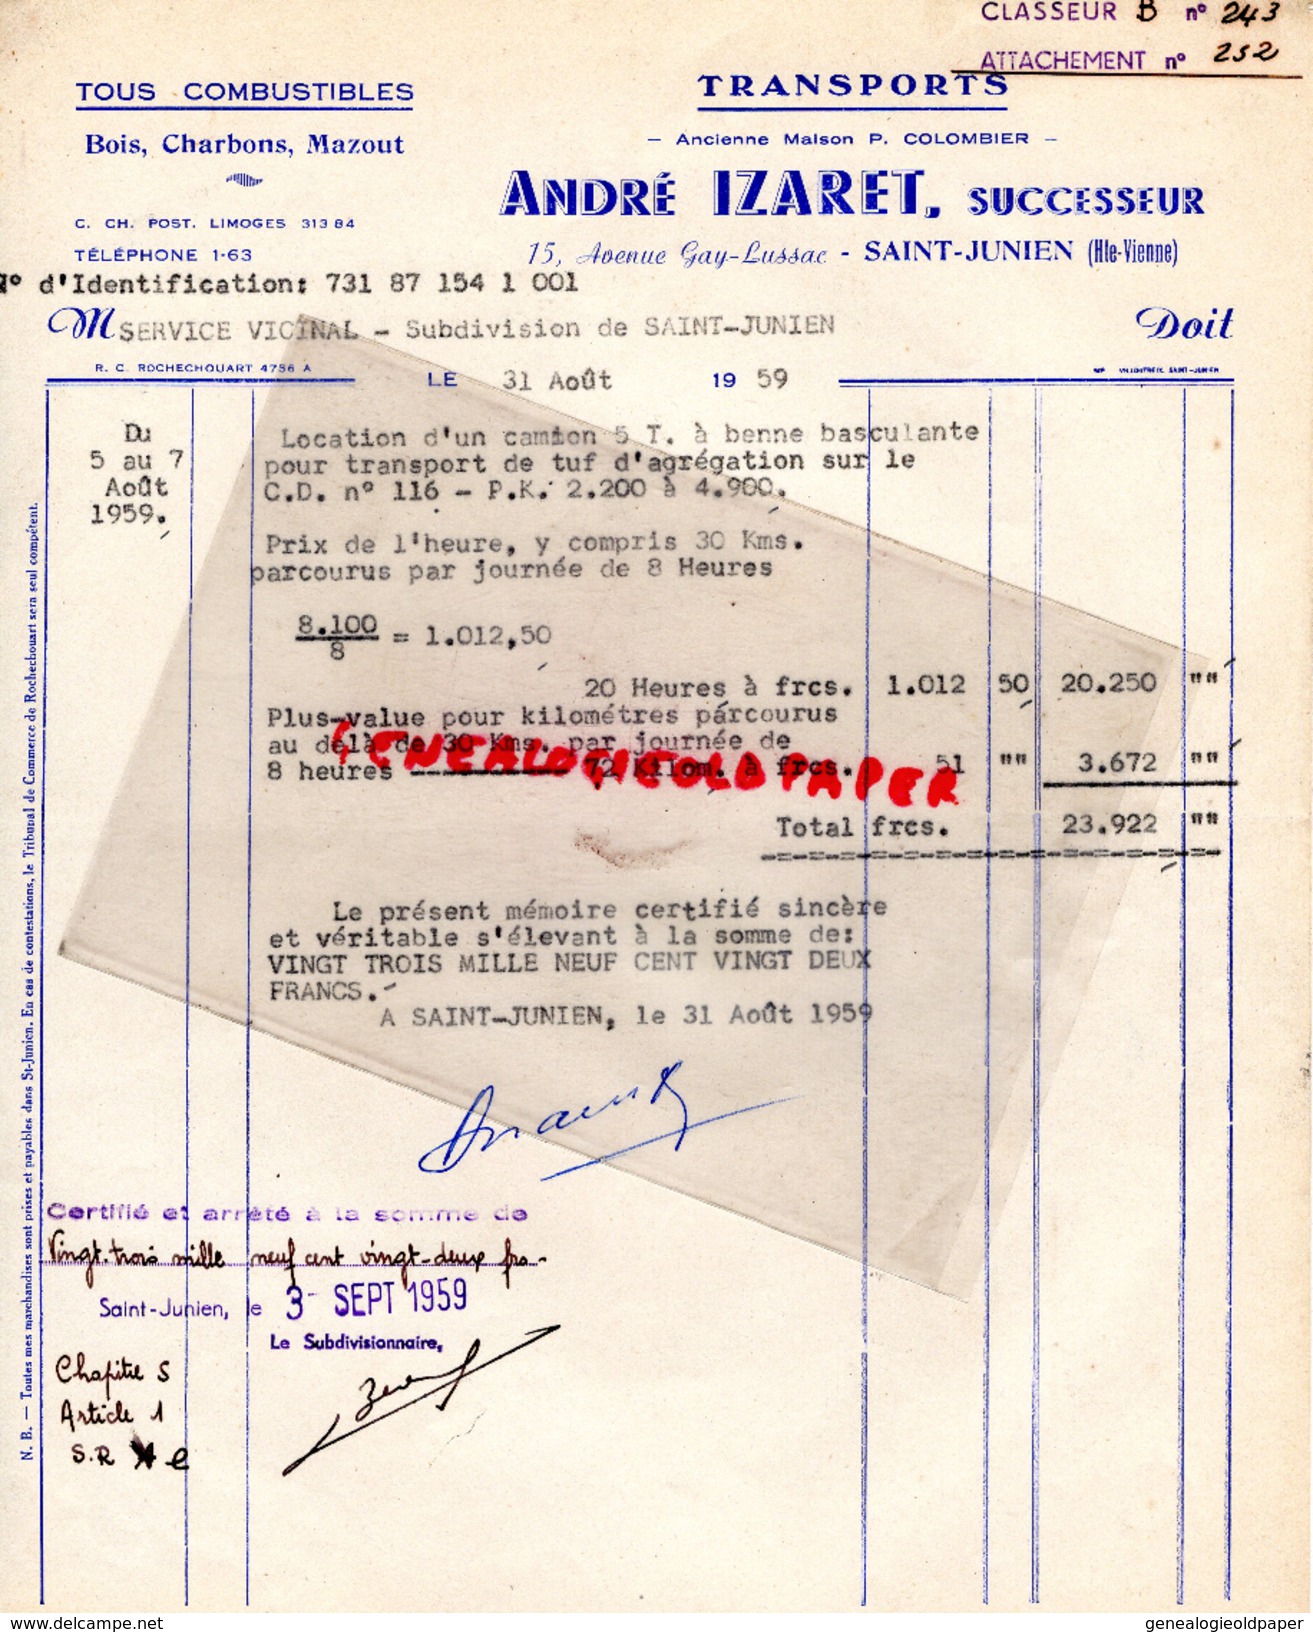 87 -ST  SAINT JUNIEN - FACTURE ANDRE IZARET - TRANSPORTS MAISON P. COLOMBIER- 15 AV. GAY LUSSAC-1959 - Transports